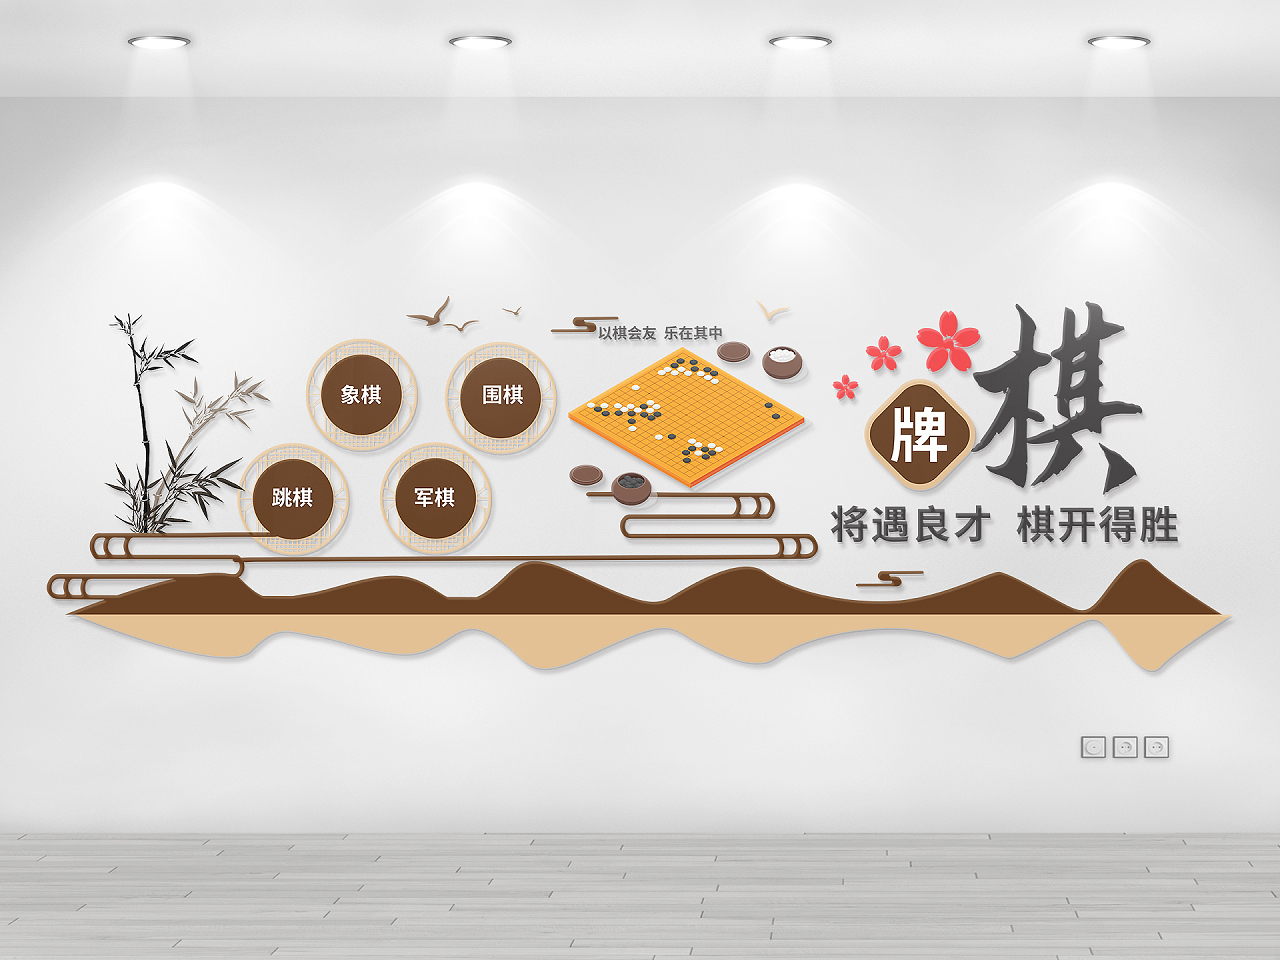 棕黄色创意大气中国风棋牌室宣传文化墙设计五子棋文化墙